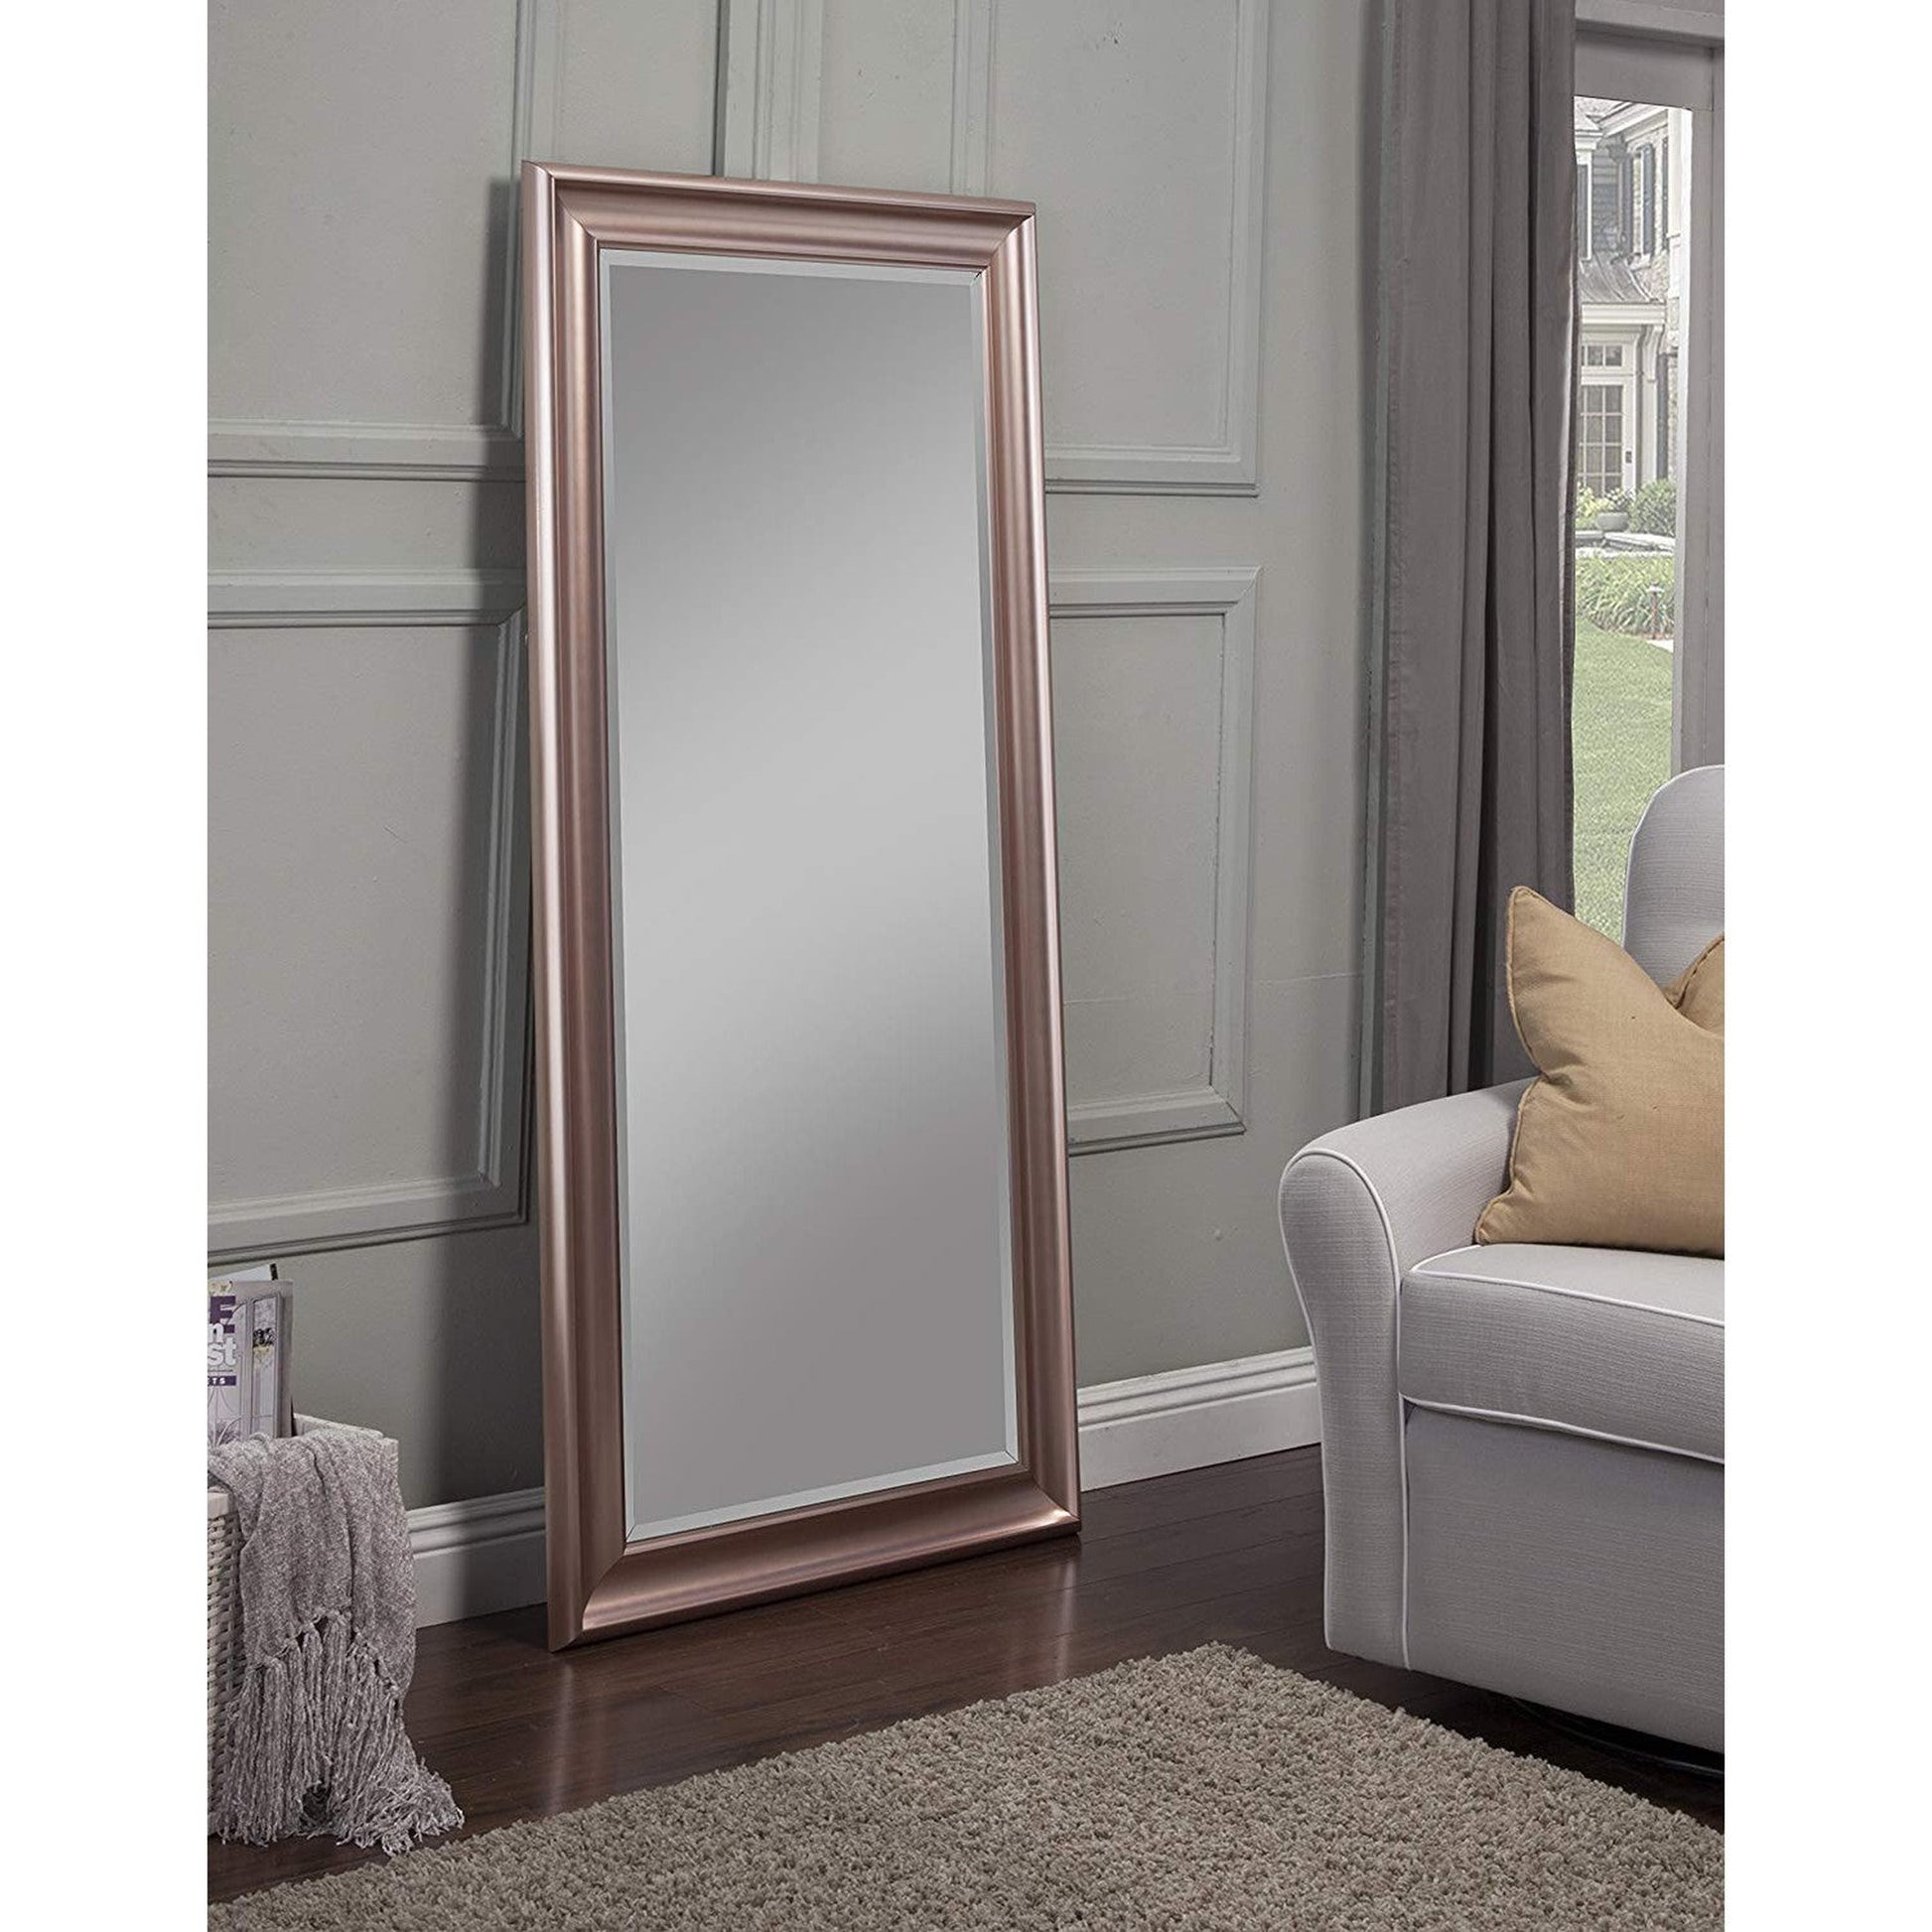 Benzara Rose Gold Rectangular Polystyrene Frame Full Length Leaner Mirror